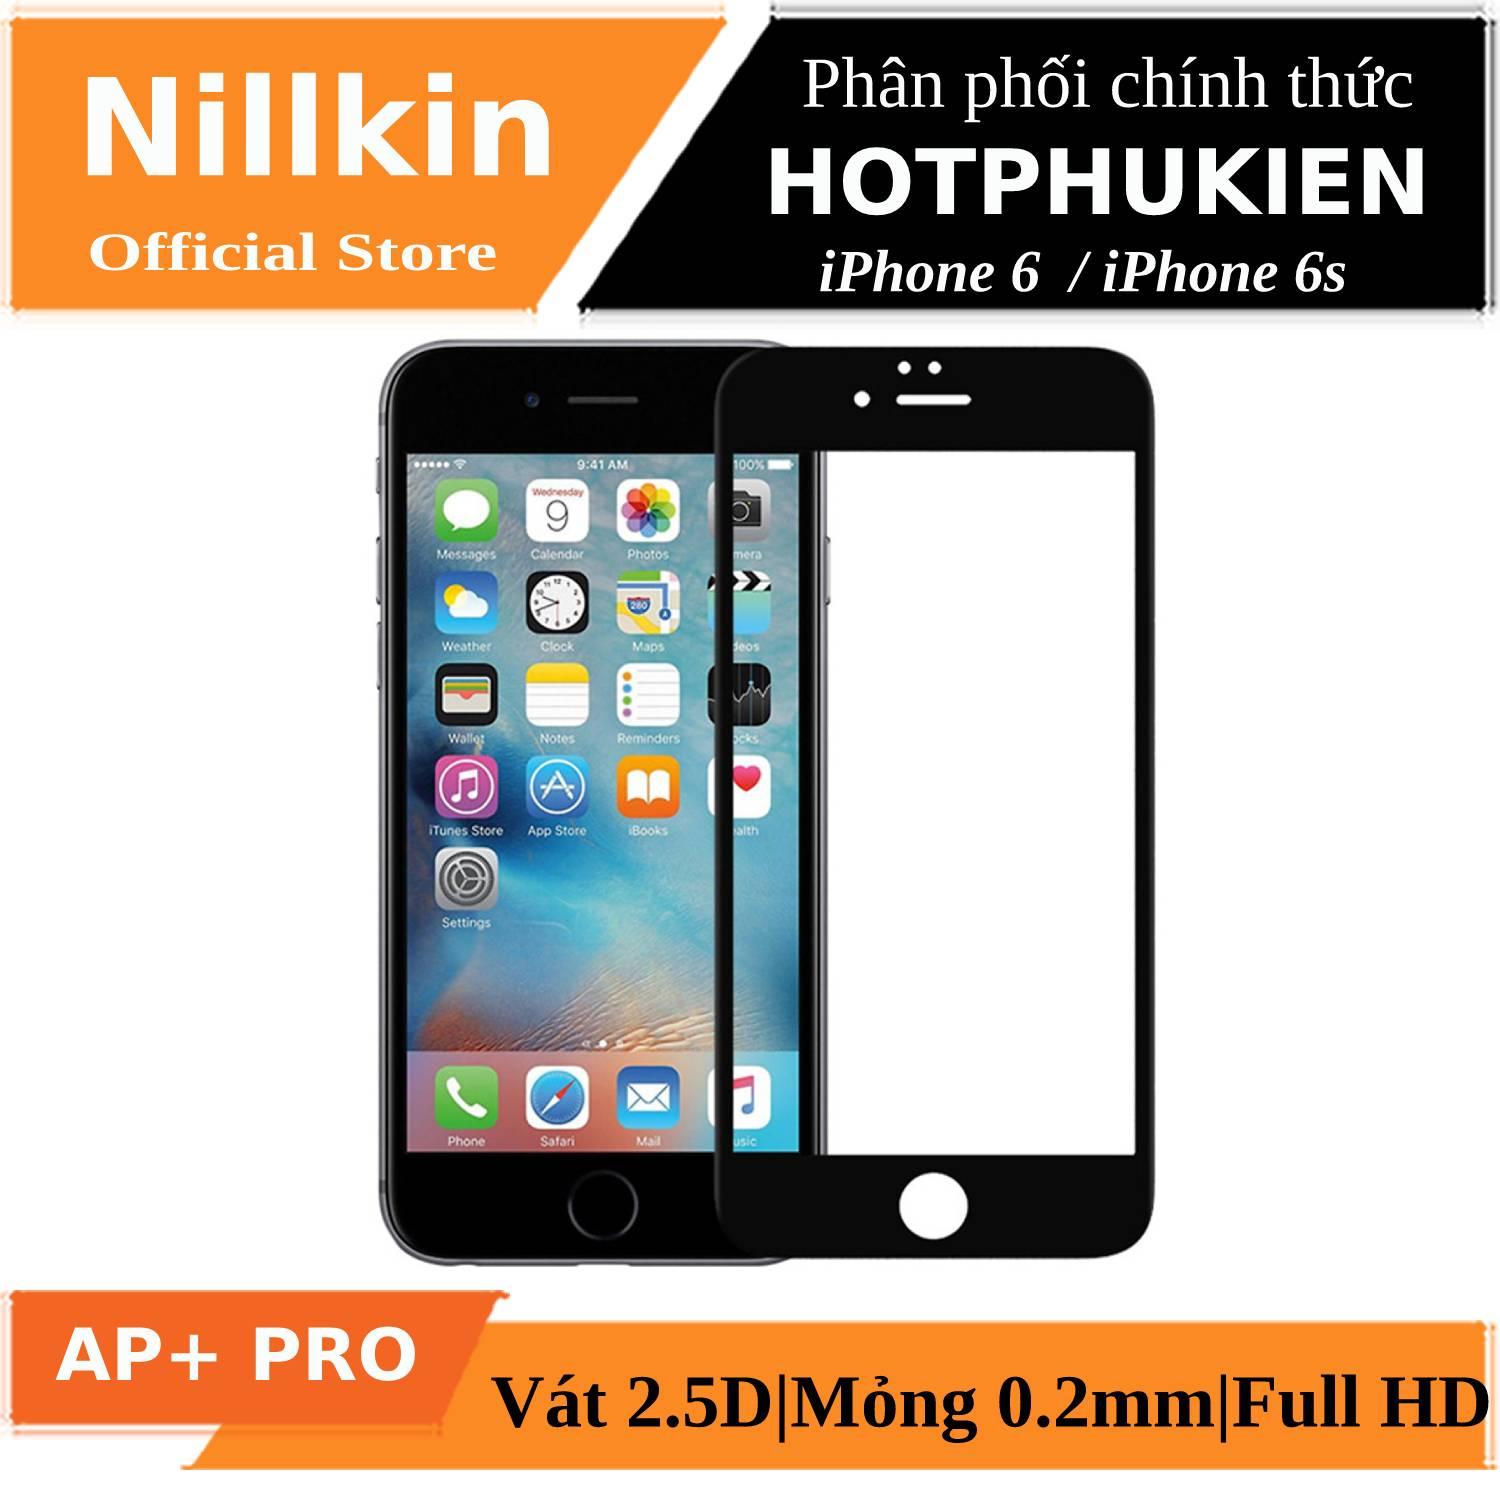 Miếng dán kính cường lực full 3D cho iPhone 6 / iPhone 6s hiệu Nillkin AP+ Pro